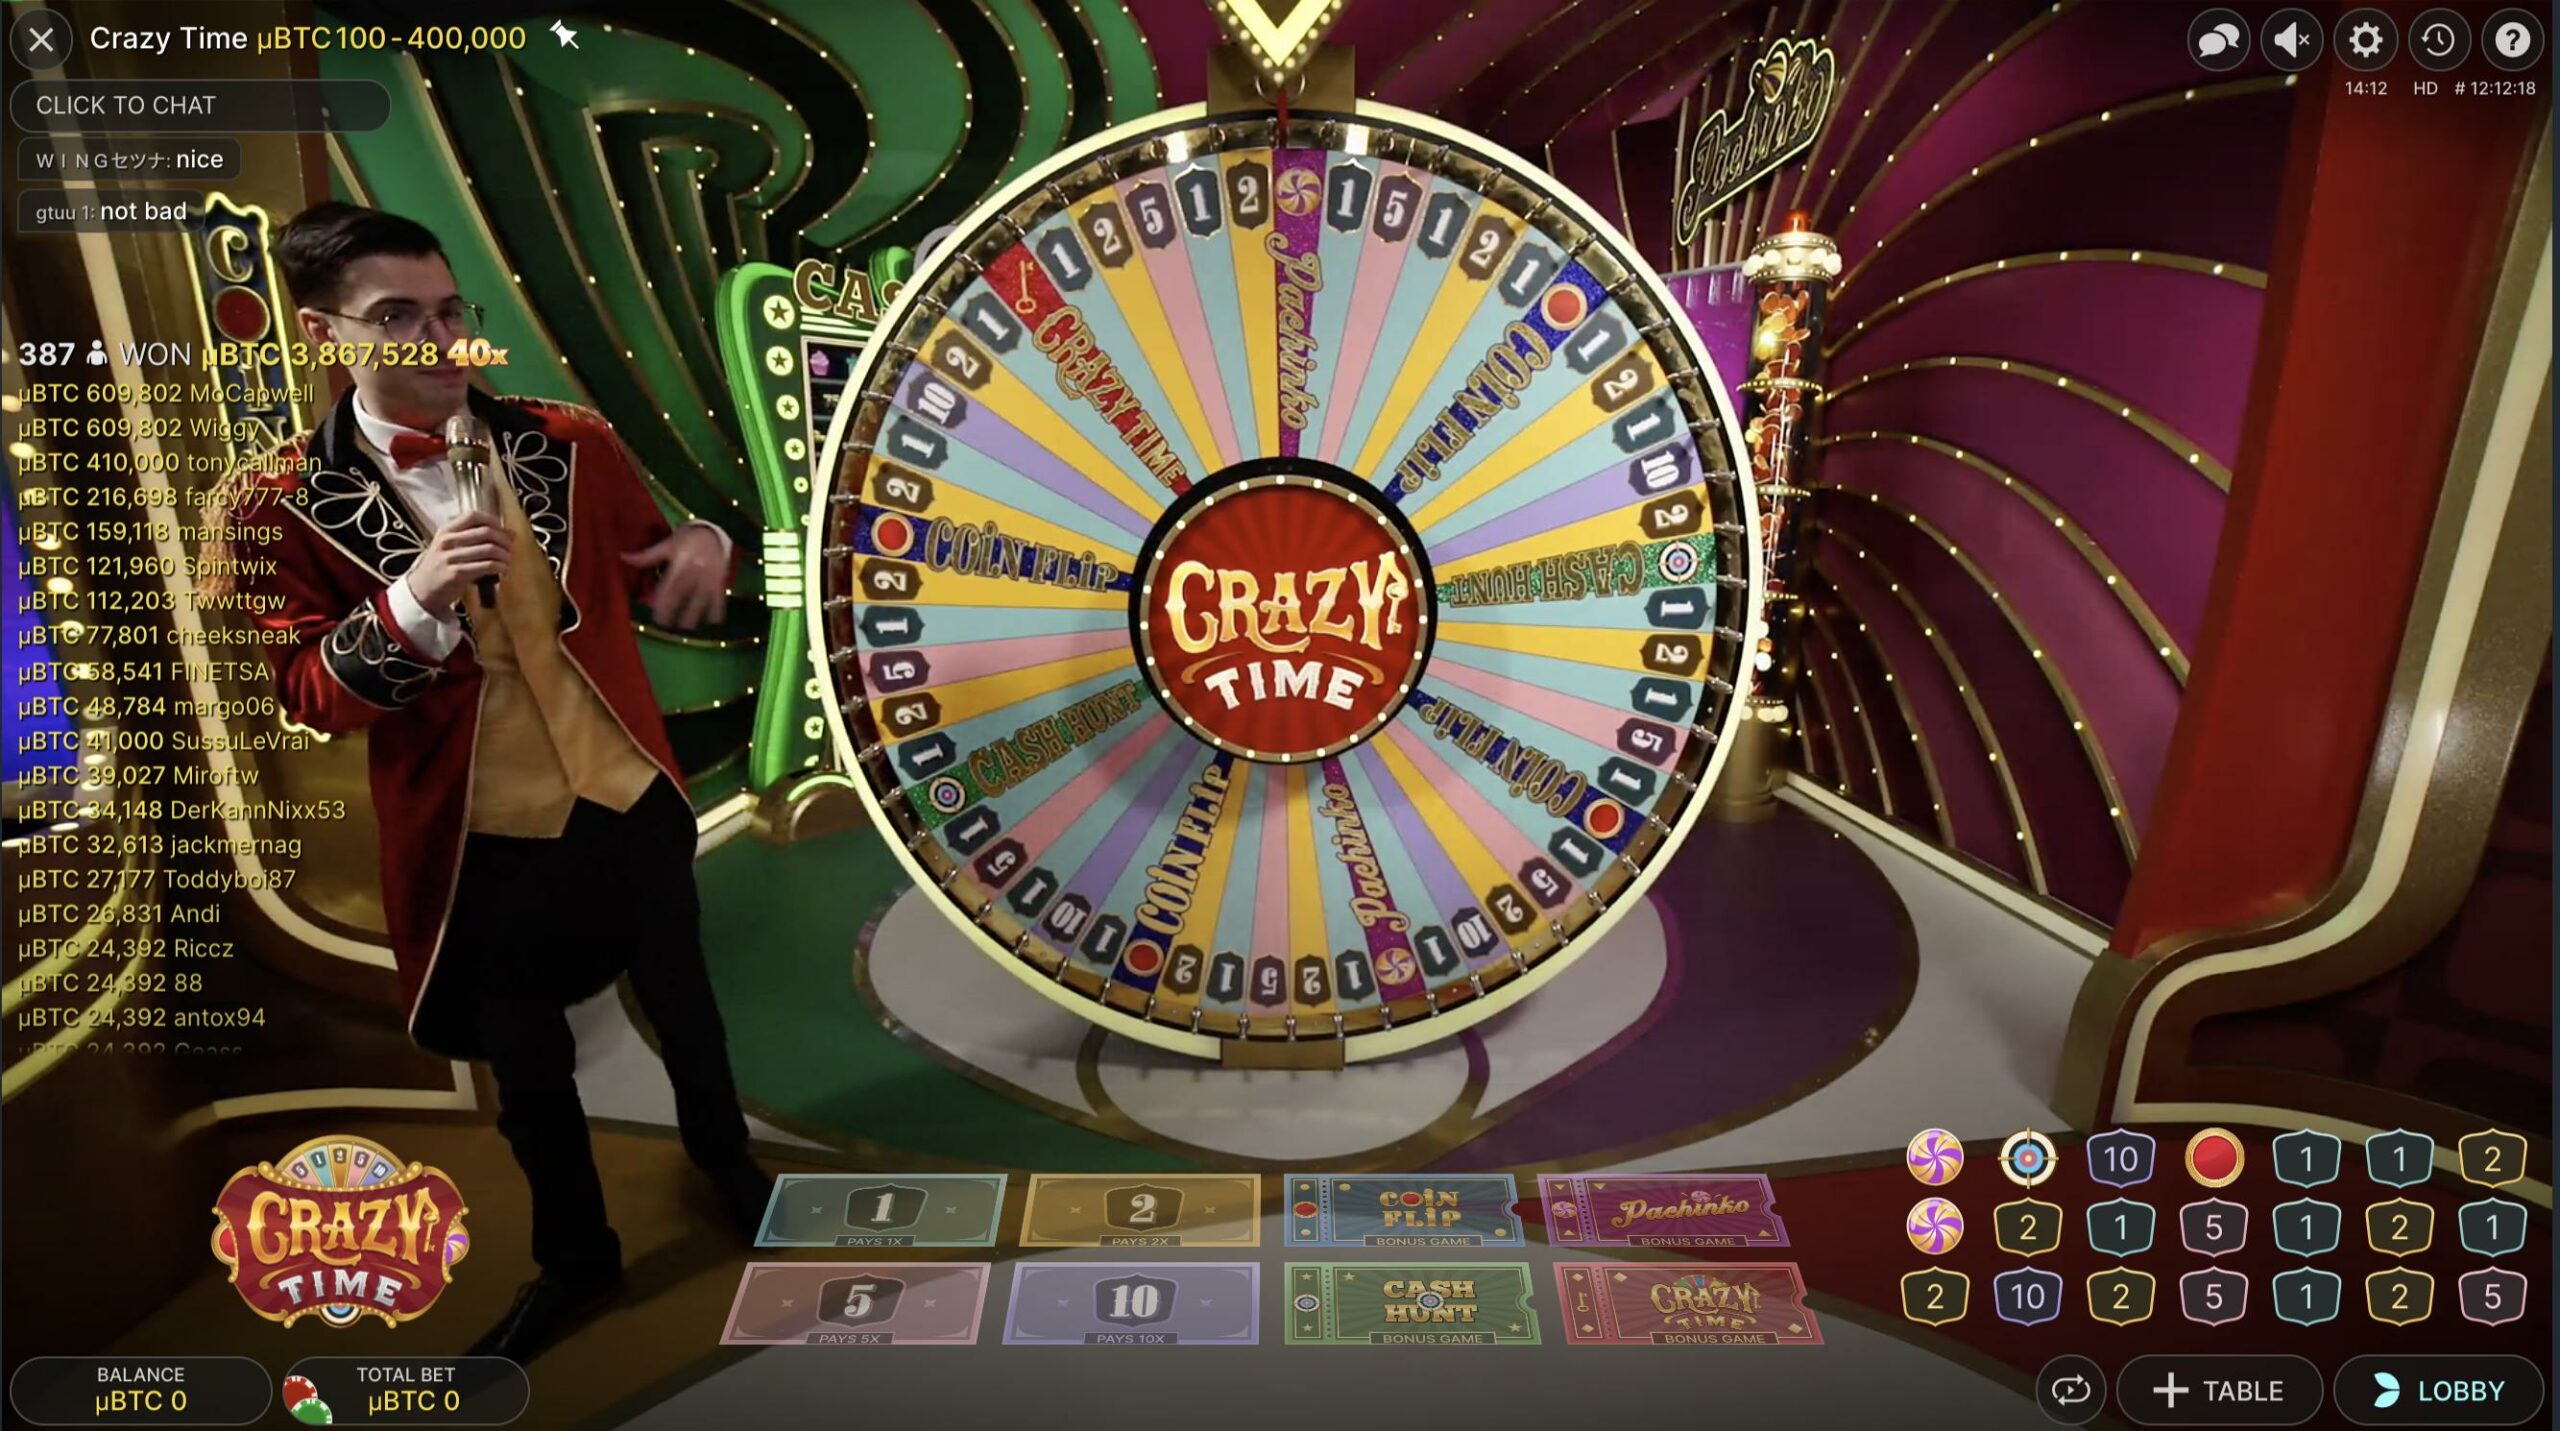 Crazy time casino